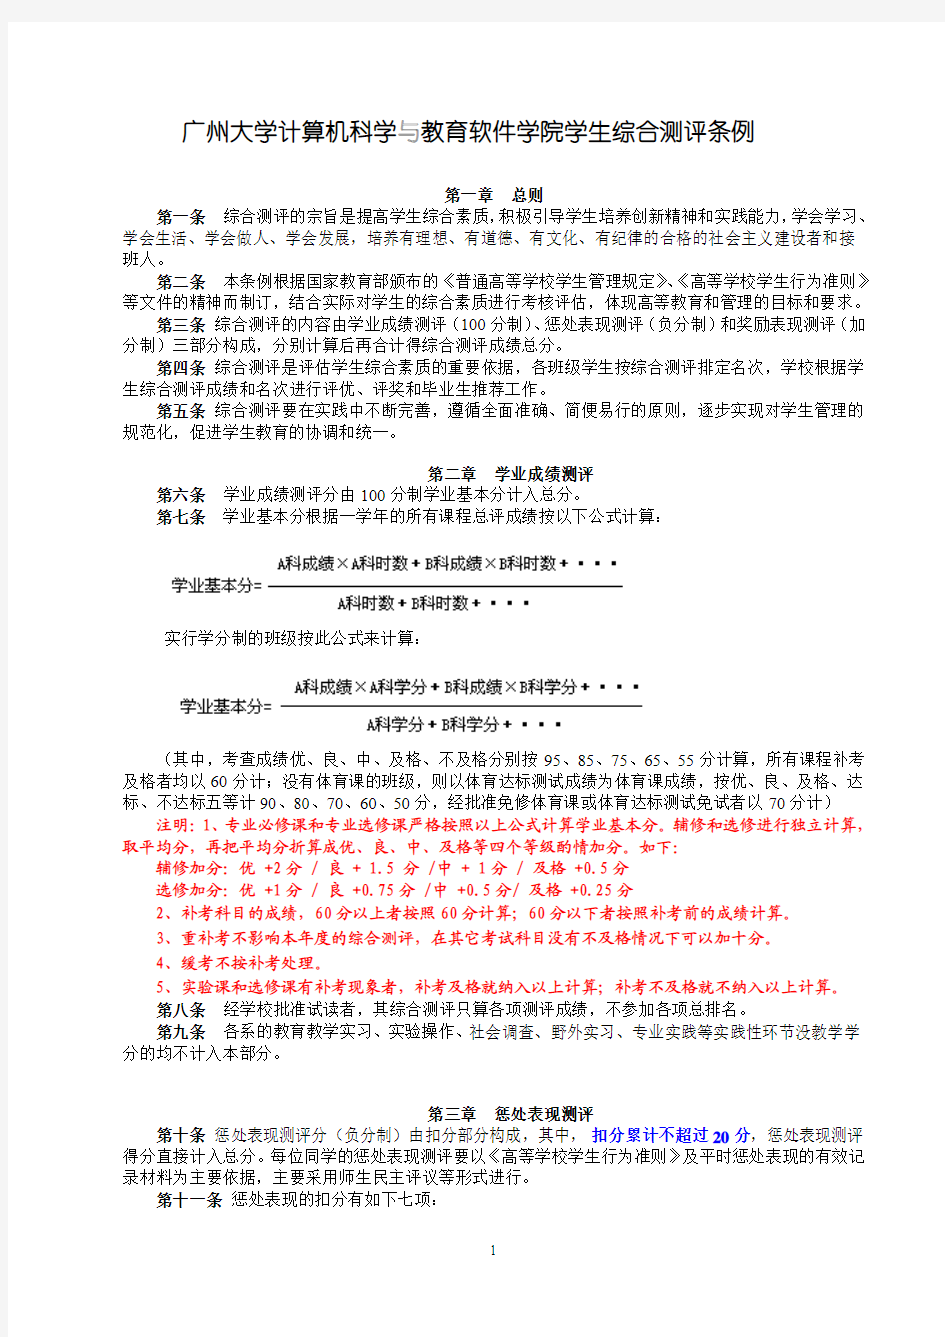 广州大学计算机学院学生综合测评条例(最新修改版 2012.4.12)